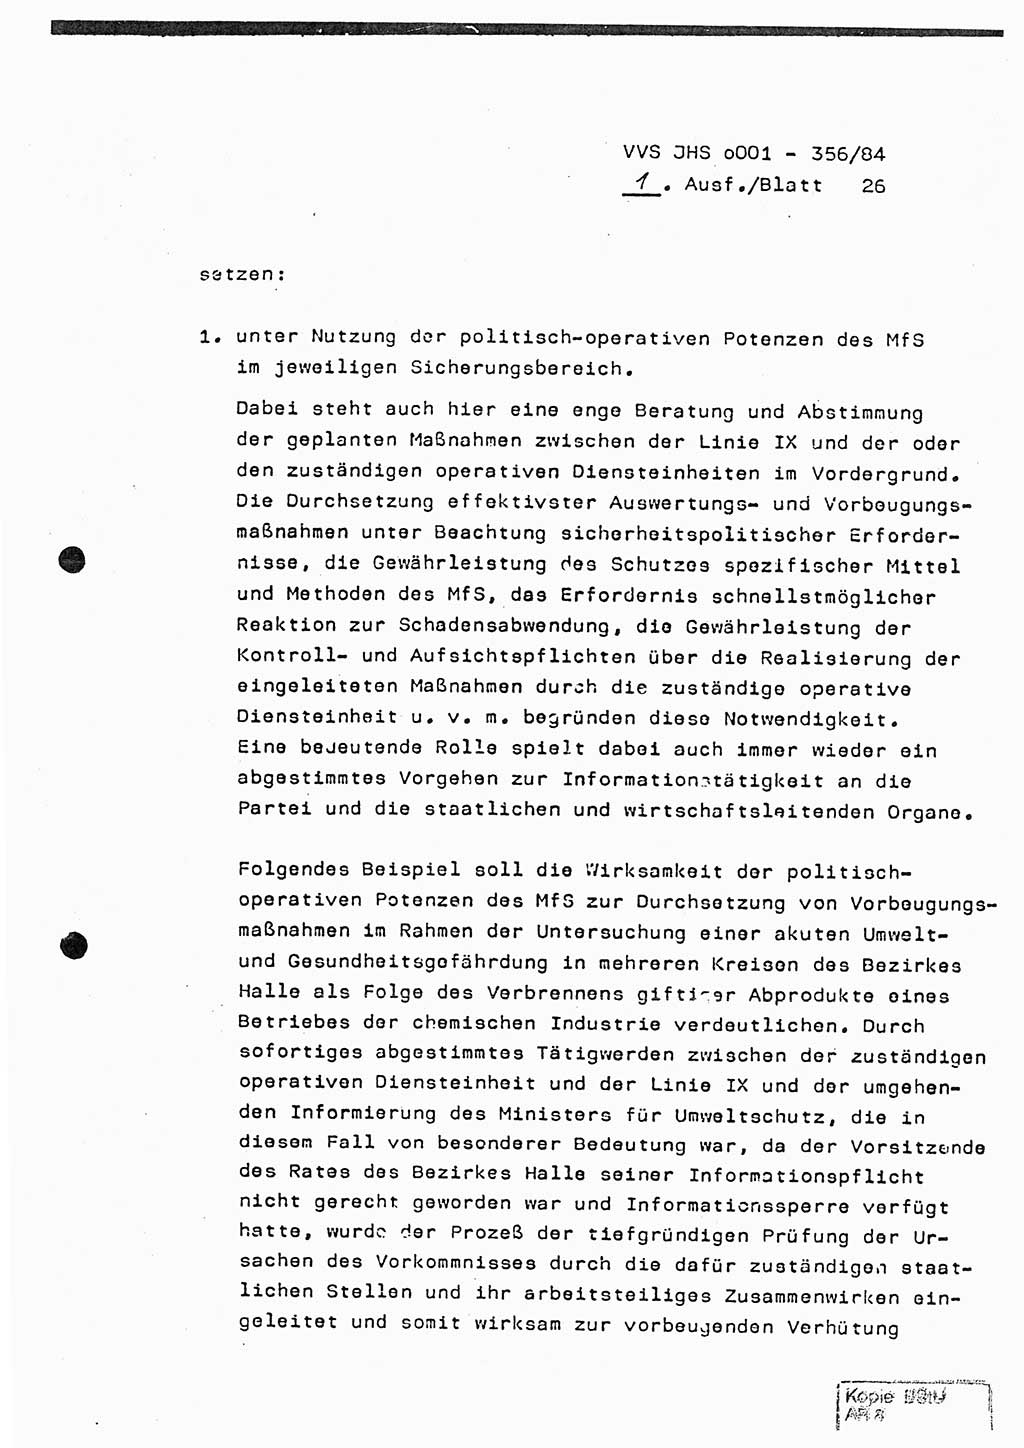 Diplomarbeit, Major Lutz Rahaus (HA Ⅸ/3), Ministerium für Staatssicherheit (MfS) [Deutsche Demokratische Republik (DDR)], Juristische Hochschule (JHS), Vertrauliche Verschlußsache (VVS) o001-356/84, Potsdam 1984, Seite 26 (Dipl.-Arb. MfS DDR JHS VVS o001-356/84 1984, S. 26)